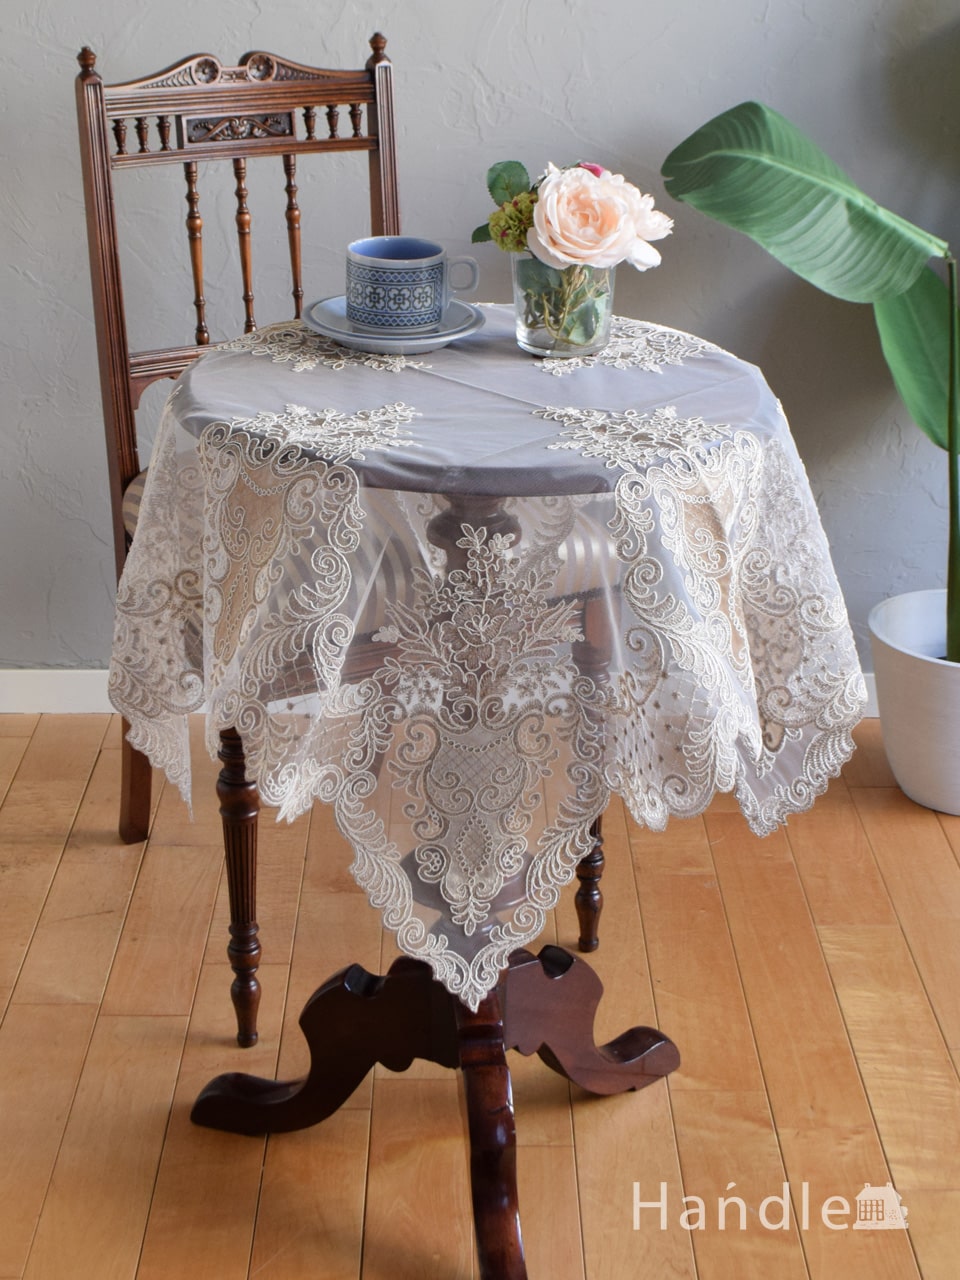 フレンチアンティーク風の美しいテーブルクロス、華やかな刺繍の入ったテーブルマット85×85 (n20-222)